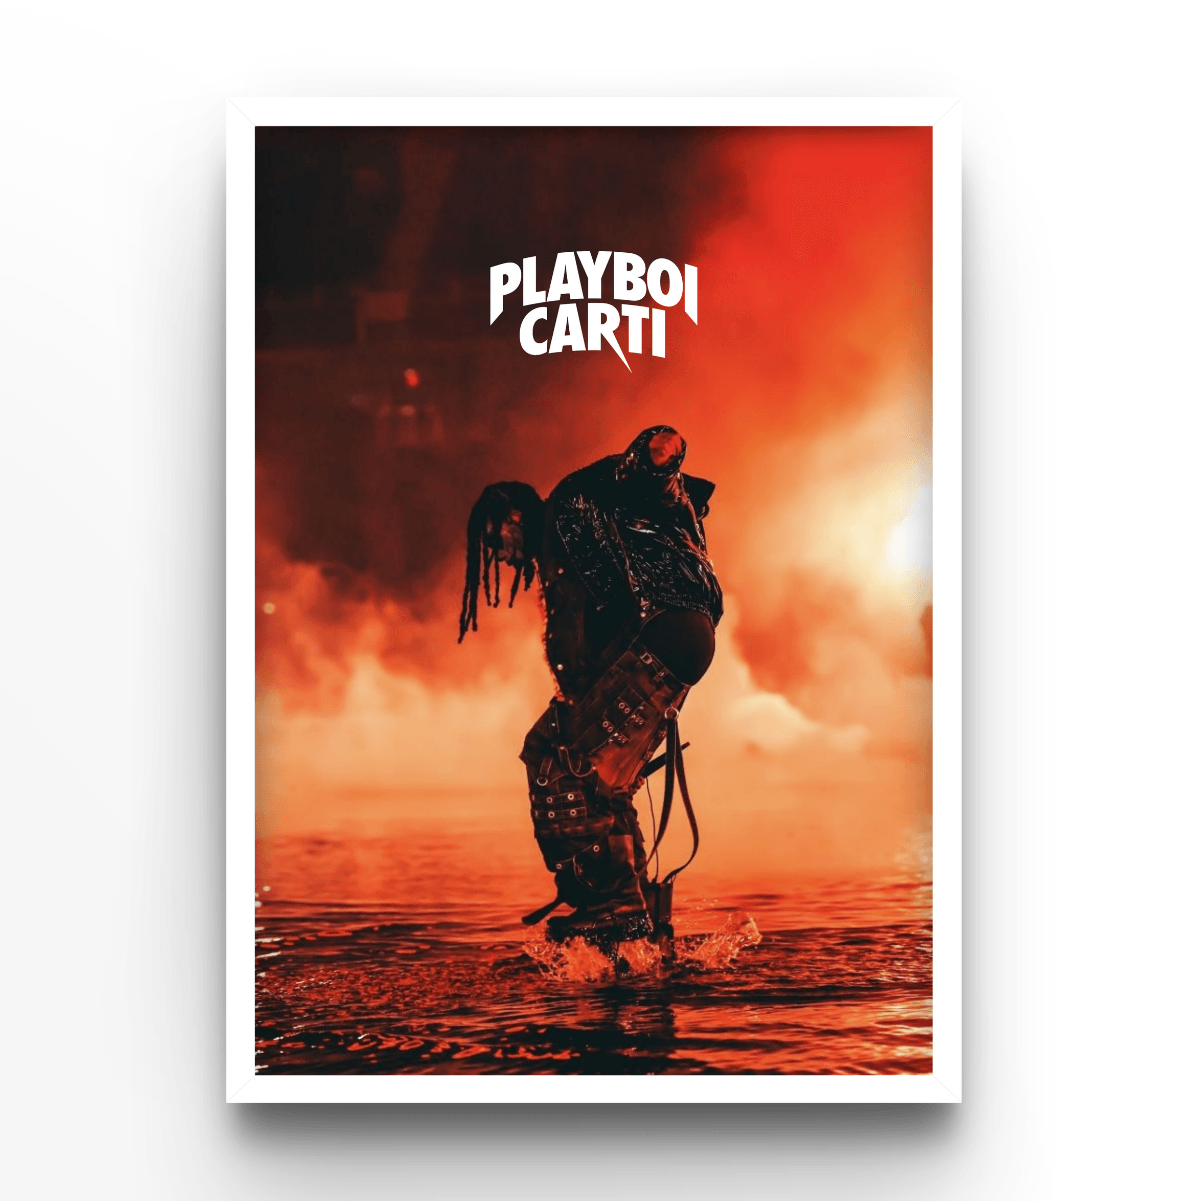 Playboi Carti - A4, A3, A2 Posters Base - Poster Print Shop / Art Prints / PostersBase